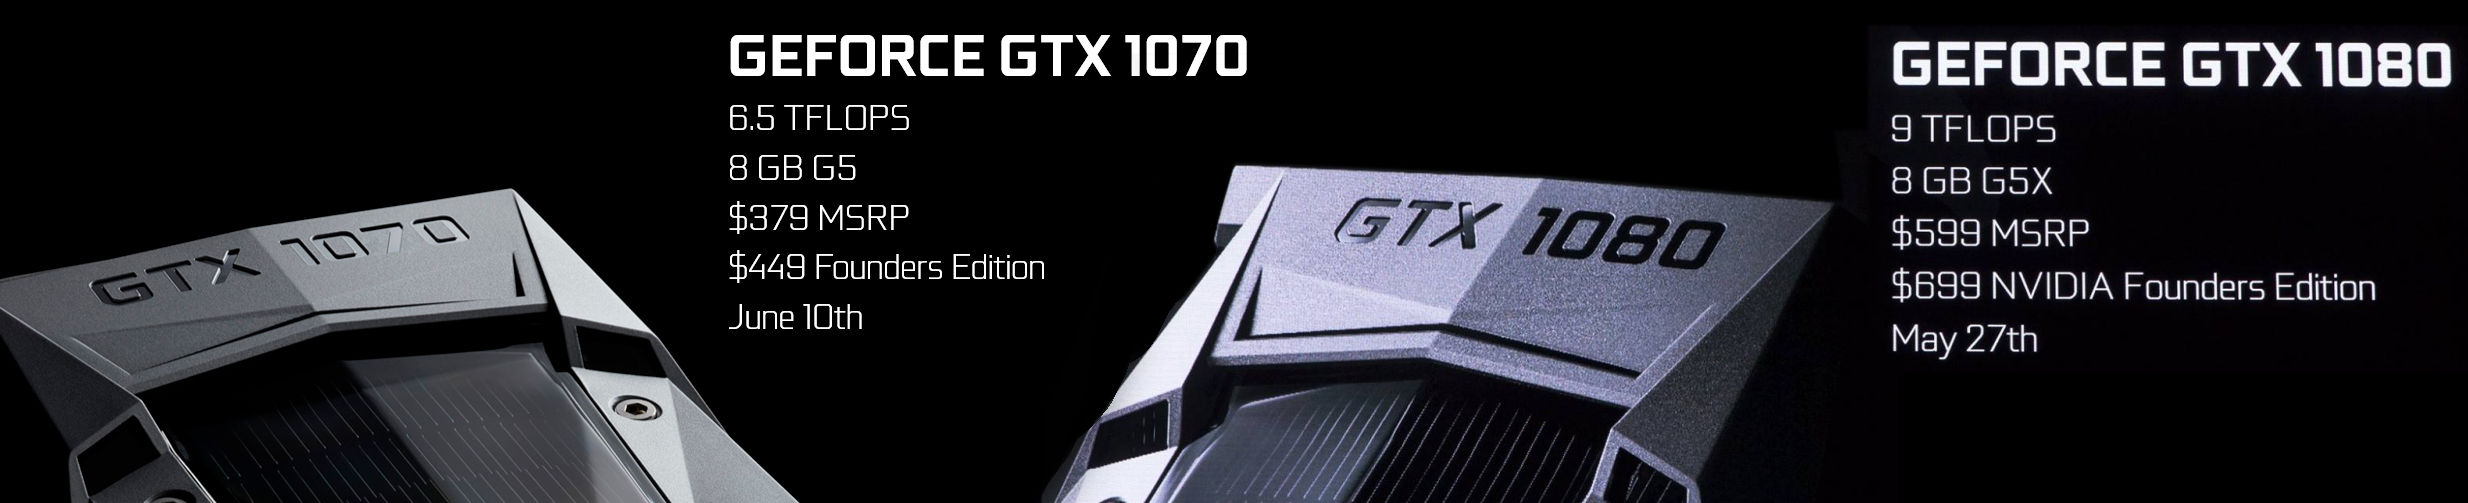 Nvidia caractéristiques GTX 1070 ET GTX 1080